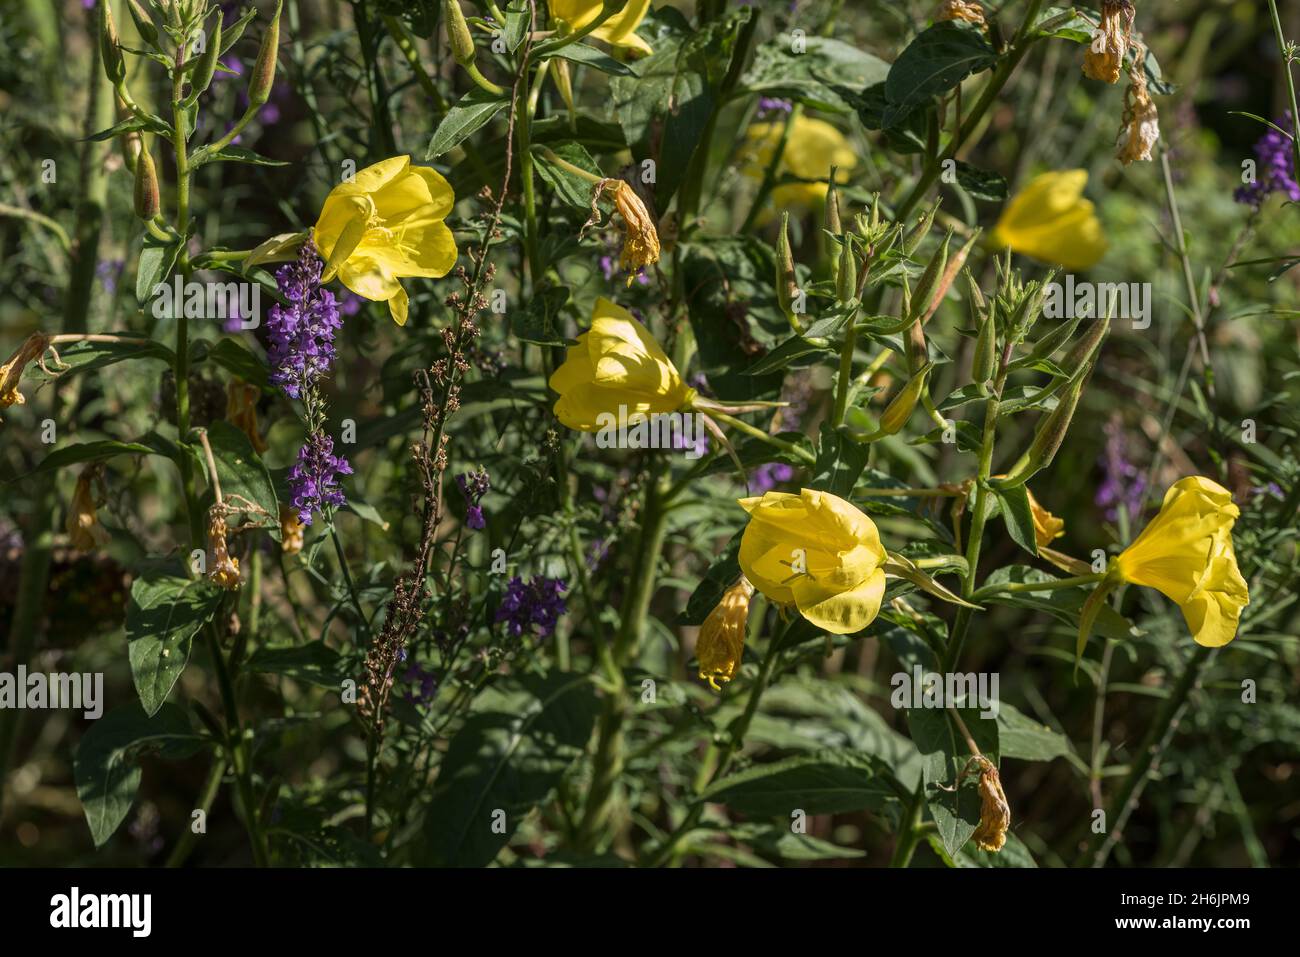 Les abeilles aiment le violet Veronica spicata pointes de fleur contraste avec sa couleur complicataire de jaune vif Oenothera biennis, commune soir-primrose Banque D'Images